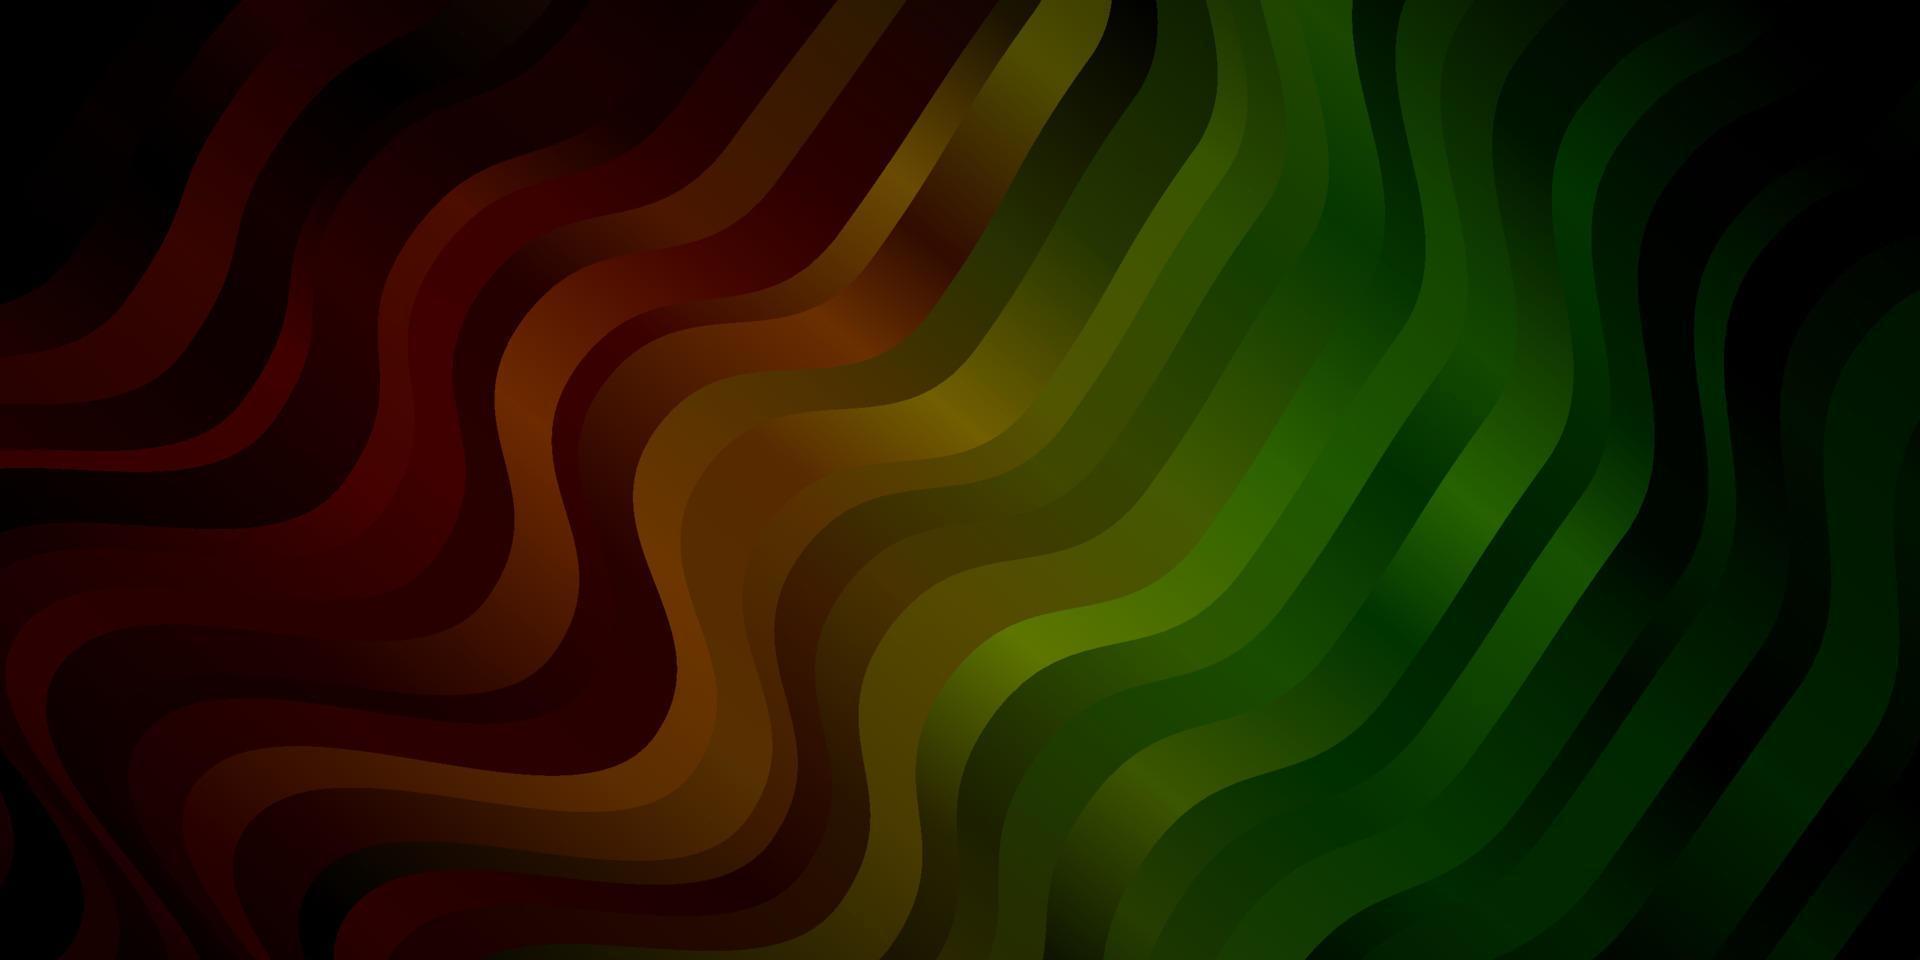 sfondo vettoriale verde scuro, rosso con linee piegate.